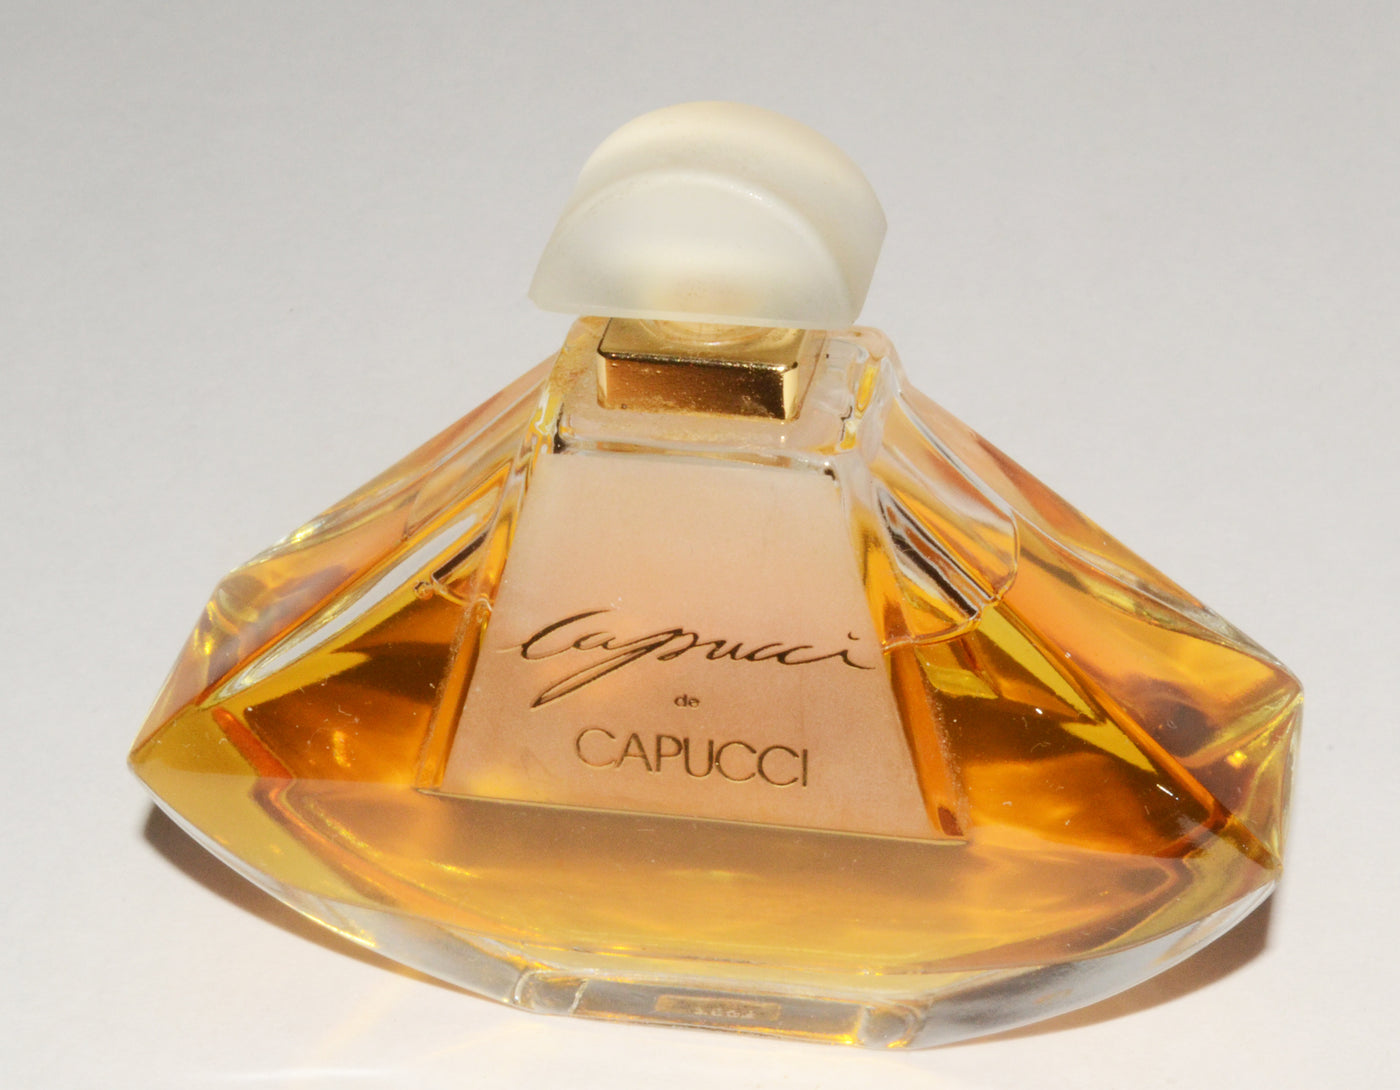 Vintage Capucci de Capucci Eau De Parfum